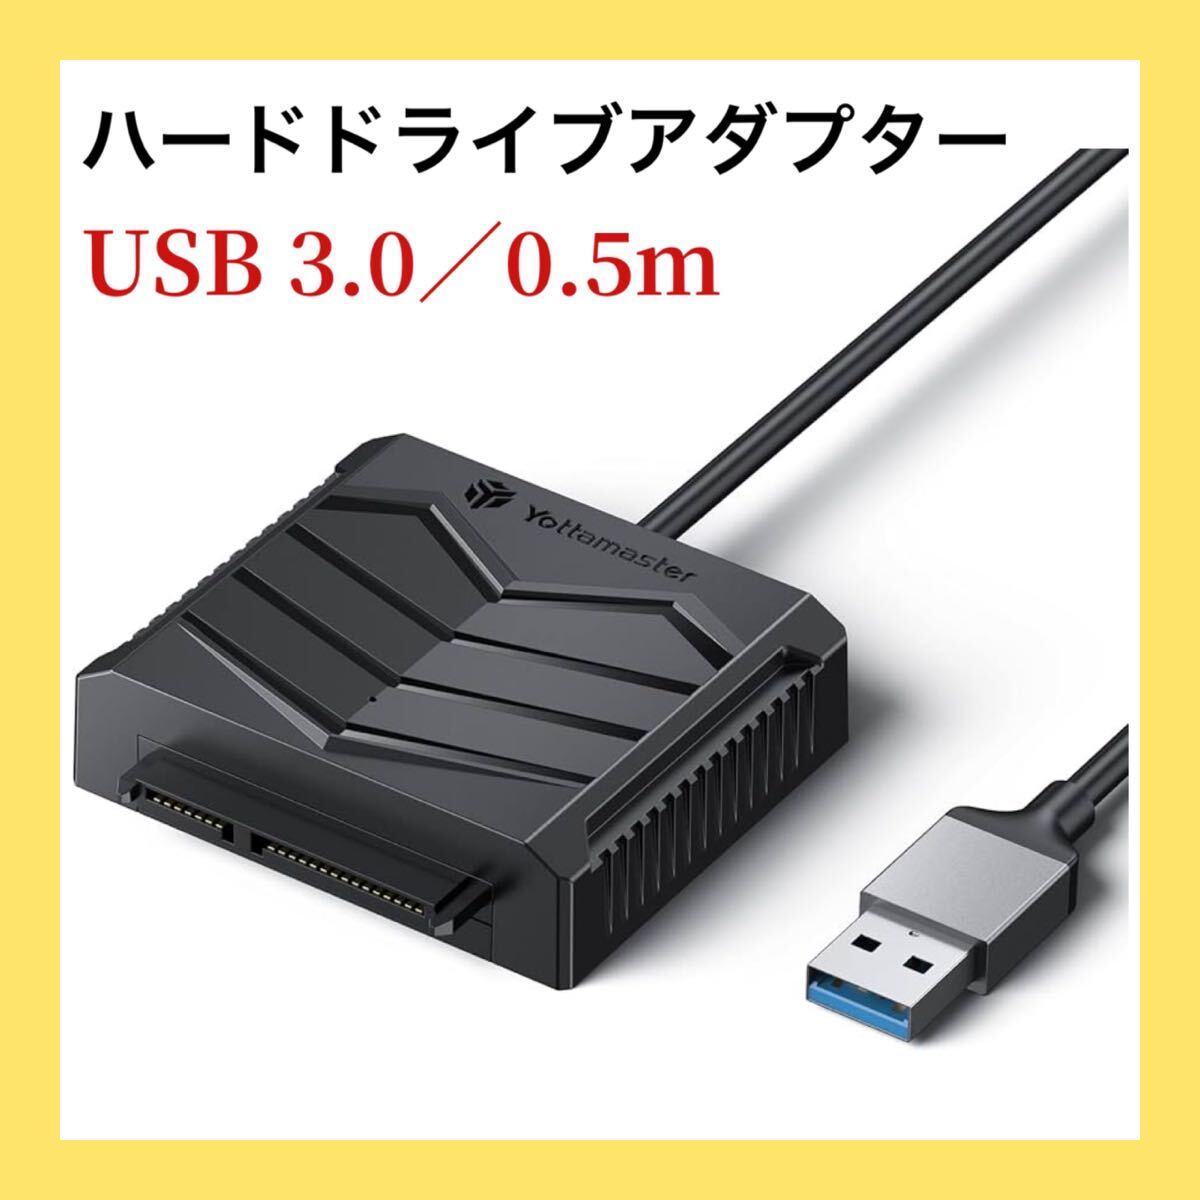 ー大特価ー Yottamaster SATA - USBケーブル USB3.0 - SATA III ハードドライブアダプターケーブル 2.5インチHDD/SSD対応 UASP対応 0.5m